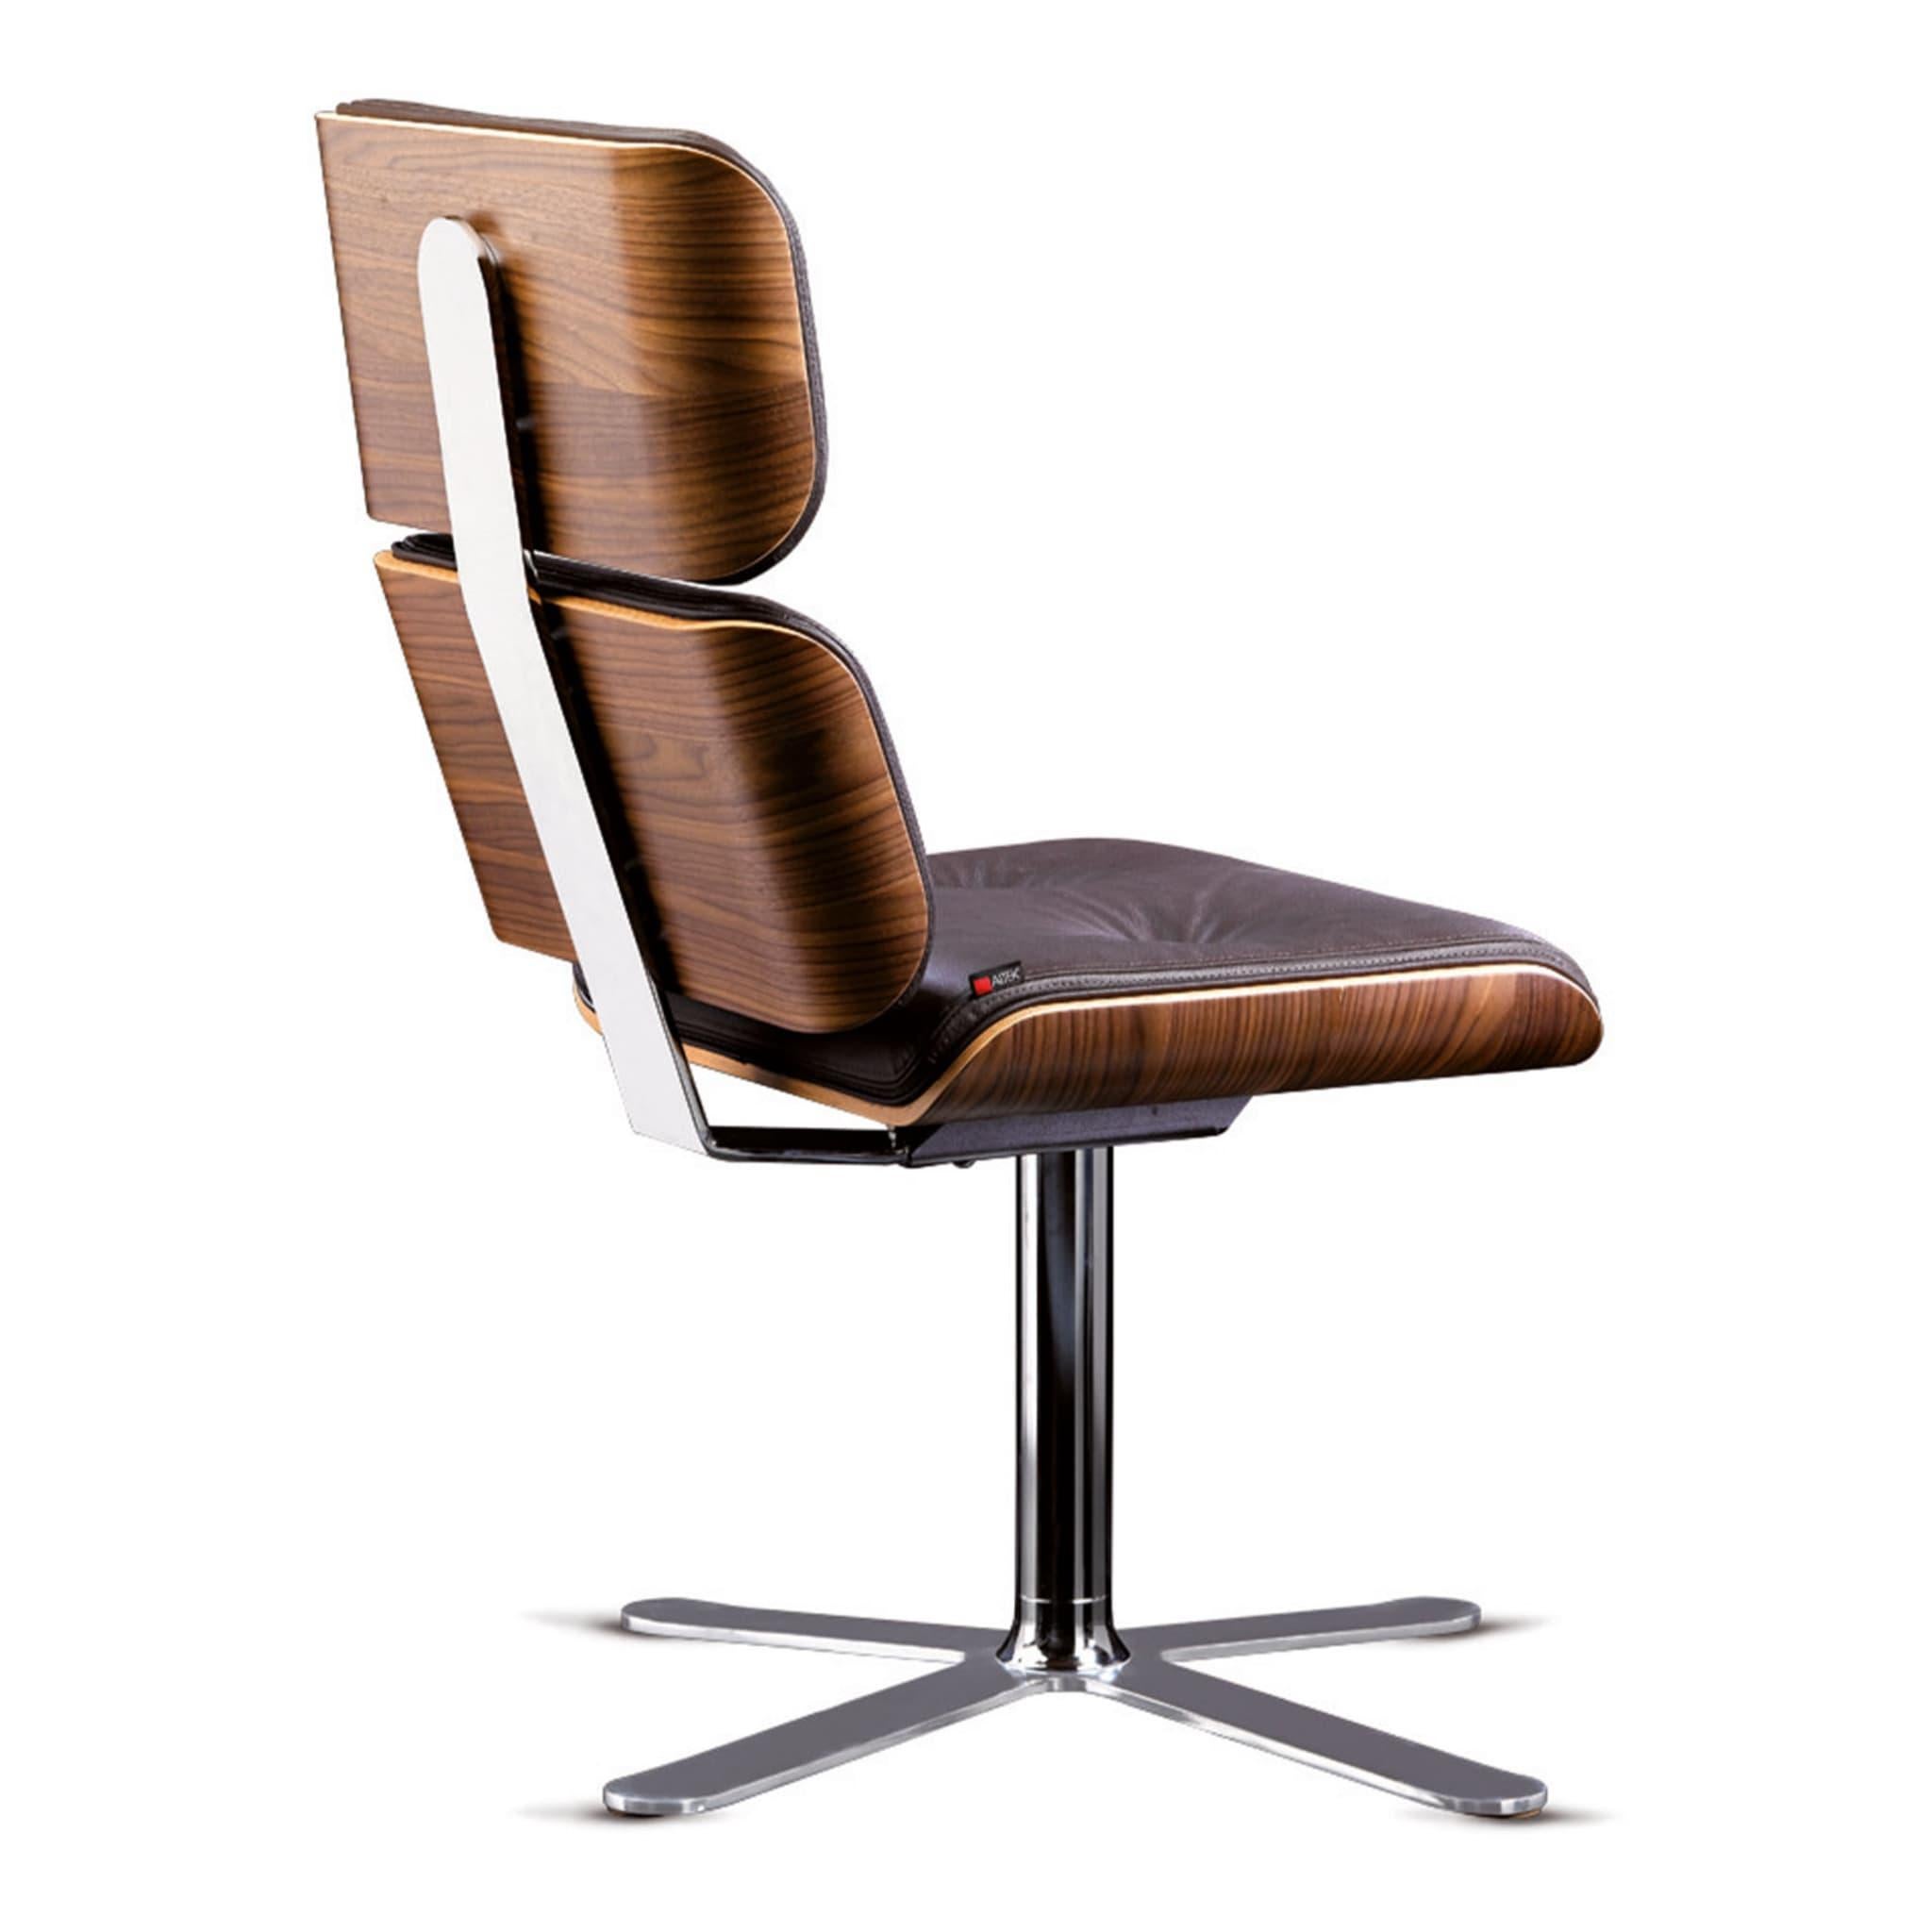 Dieser schlichte und elegante Bürostuhl ist der Inbegriff von Komfort und modern. Dieses exklusive Design von Rainer Bachshmid zeichnet sich durch zwei geschwungene Elemente an der Rückenlehne und ein größeres für die Sitzfläche aus, die aus